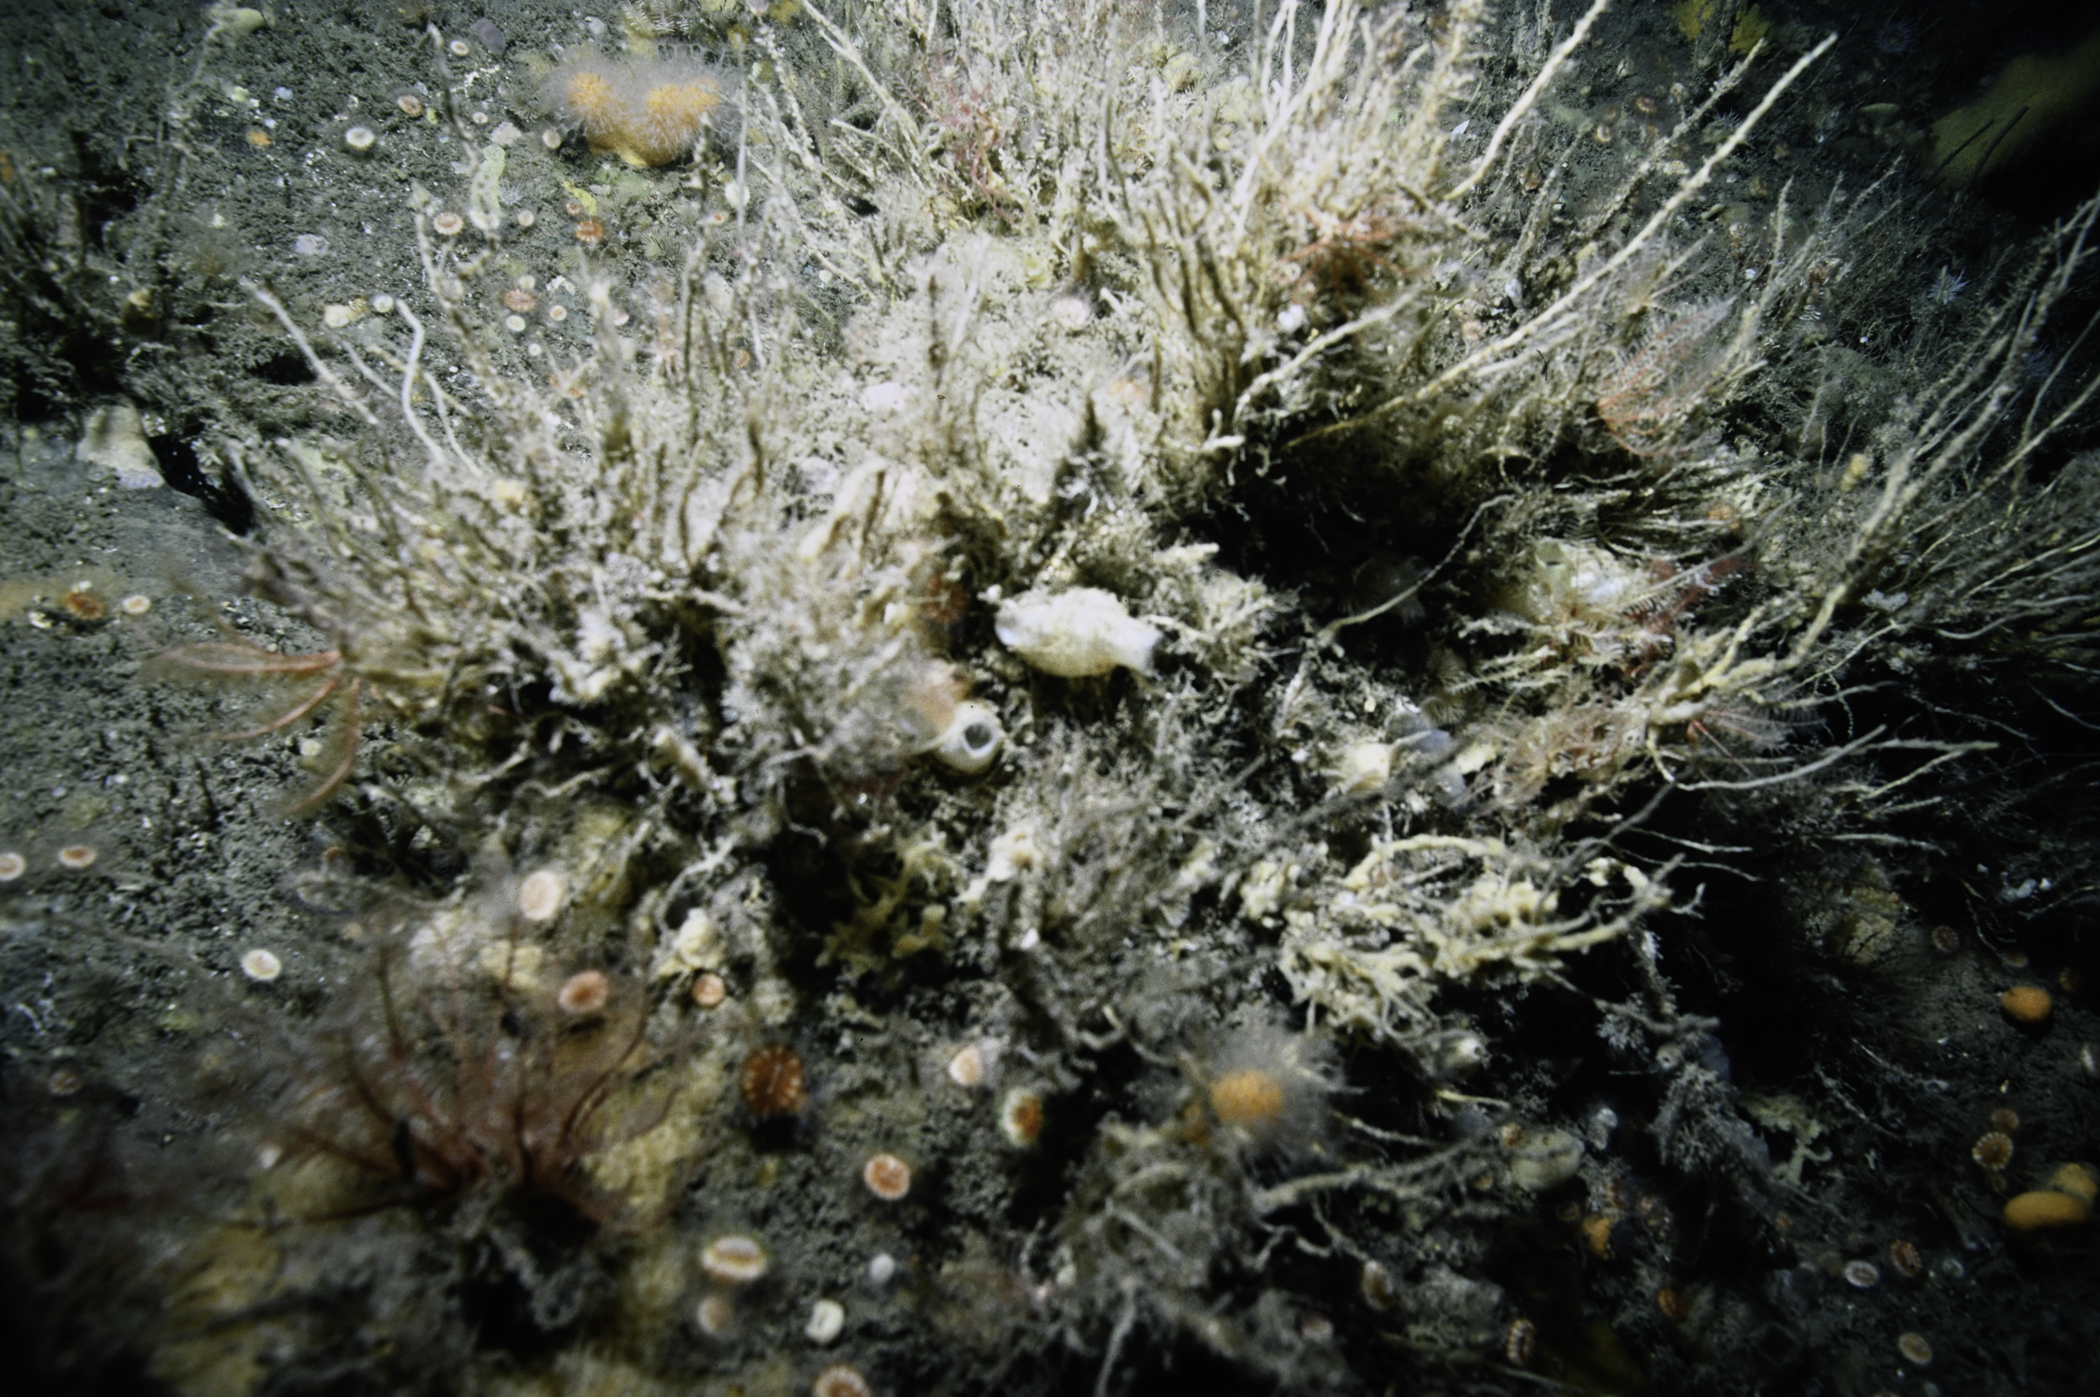 Tubularia indivisa, Polycarpa pomaria. Site: W of Farganlack Point, Rathlin Island. 